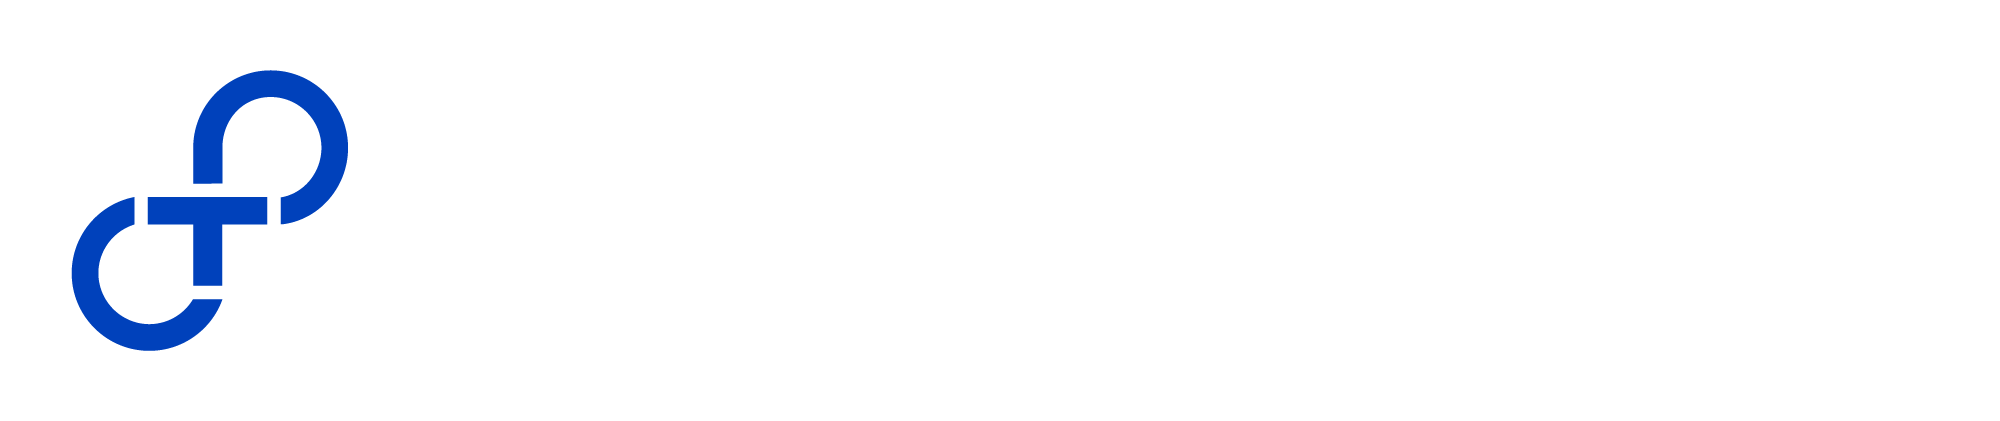 omnitutoring-logo-white